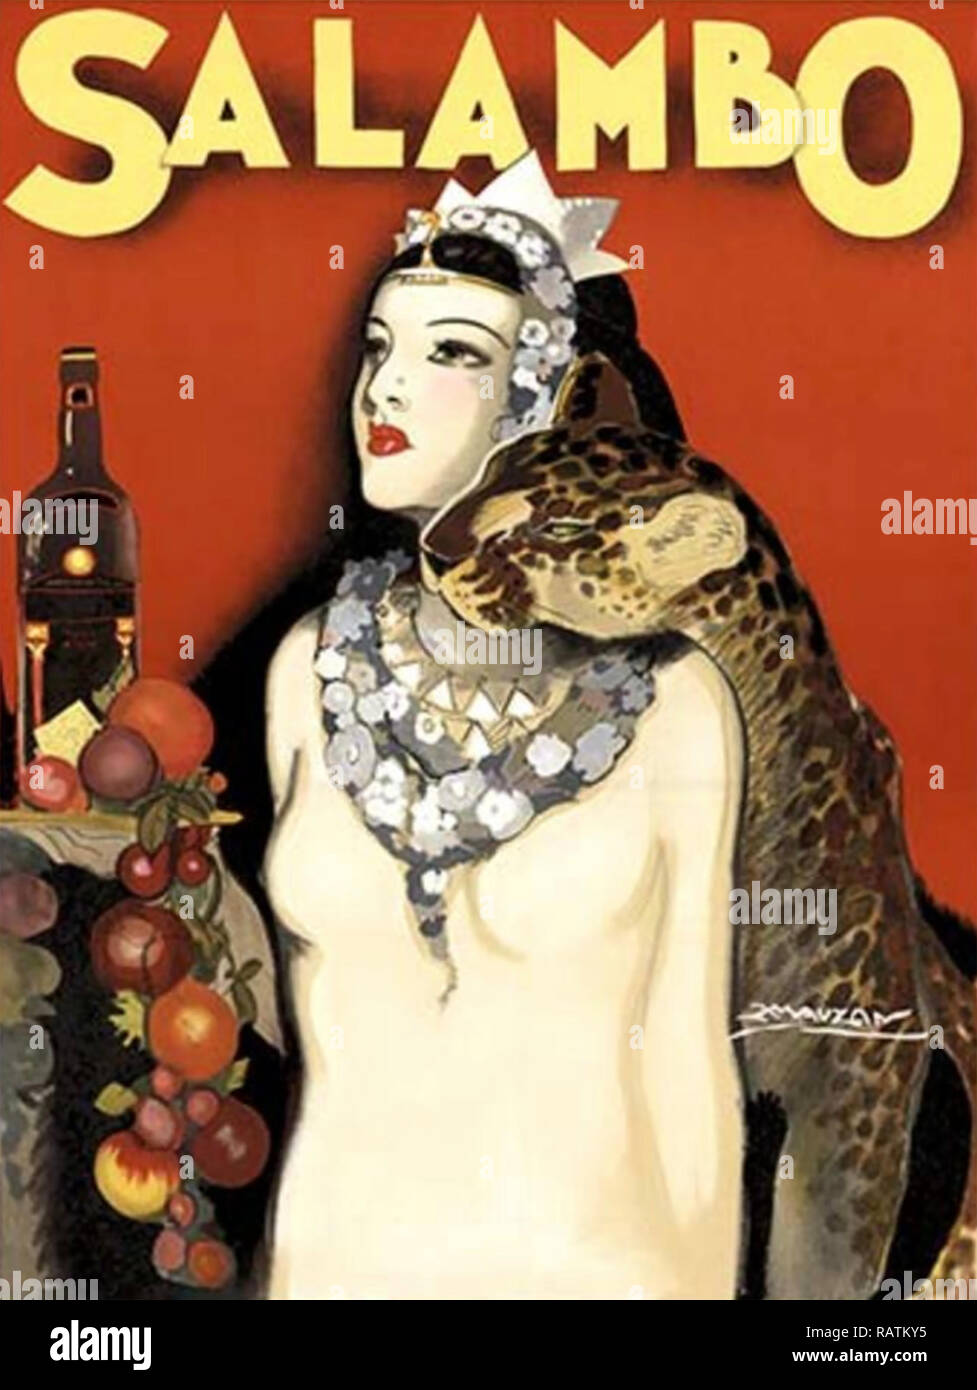 ACHILLE MAUZAN (1883-1952) artista franco-italiana. Vino alrededor de 1930 Carteles publicitarios Foto de stock